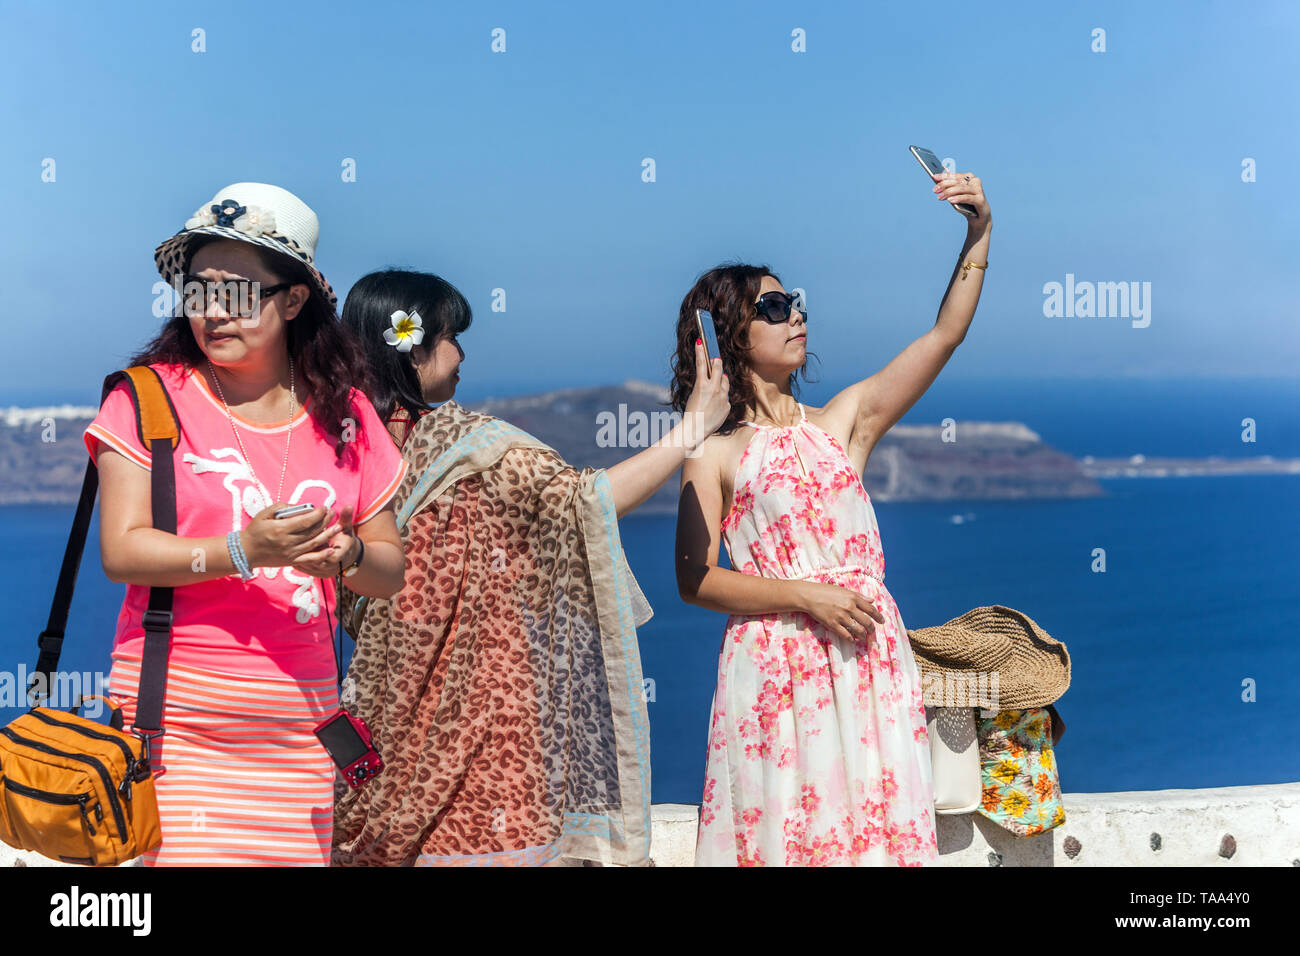 Griechenland Santorini, Menschen, Touristen, junge asiatische Frauen, die ein Foto am Telefon machen, Europa, Menschen im Urlaub Stockfoto